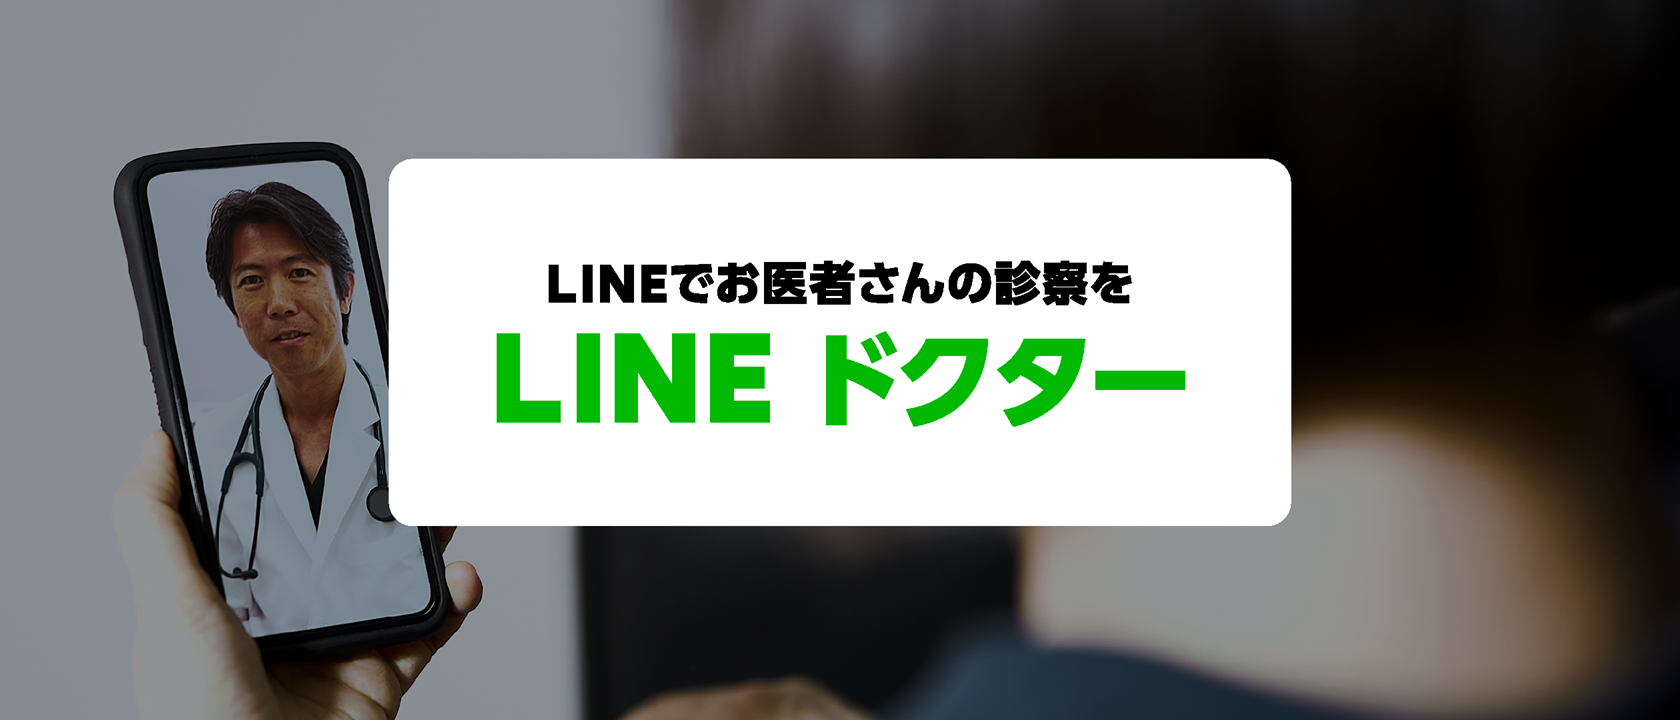 LINEで診察が受けられる「LINEドクター」11月開始。診断から支払いまでLINEで完結